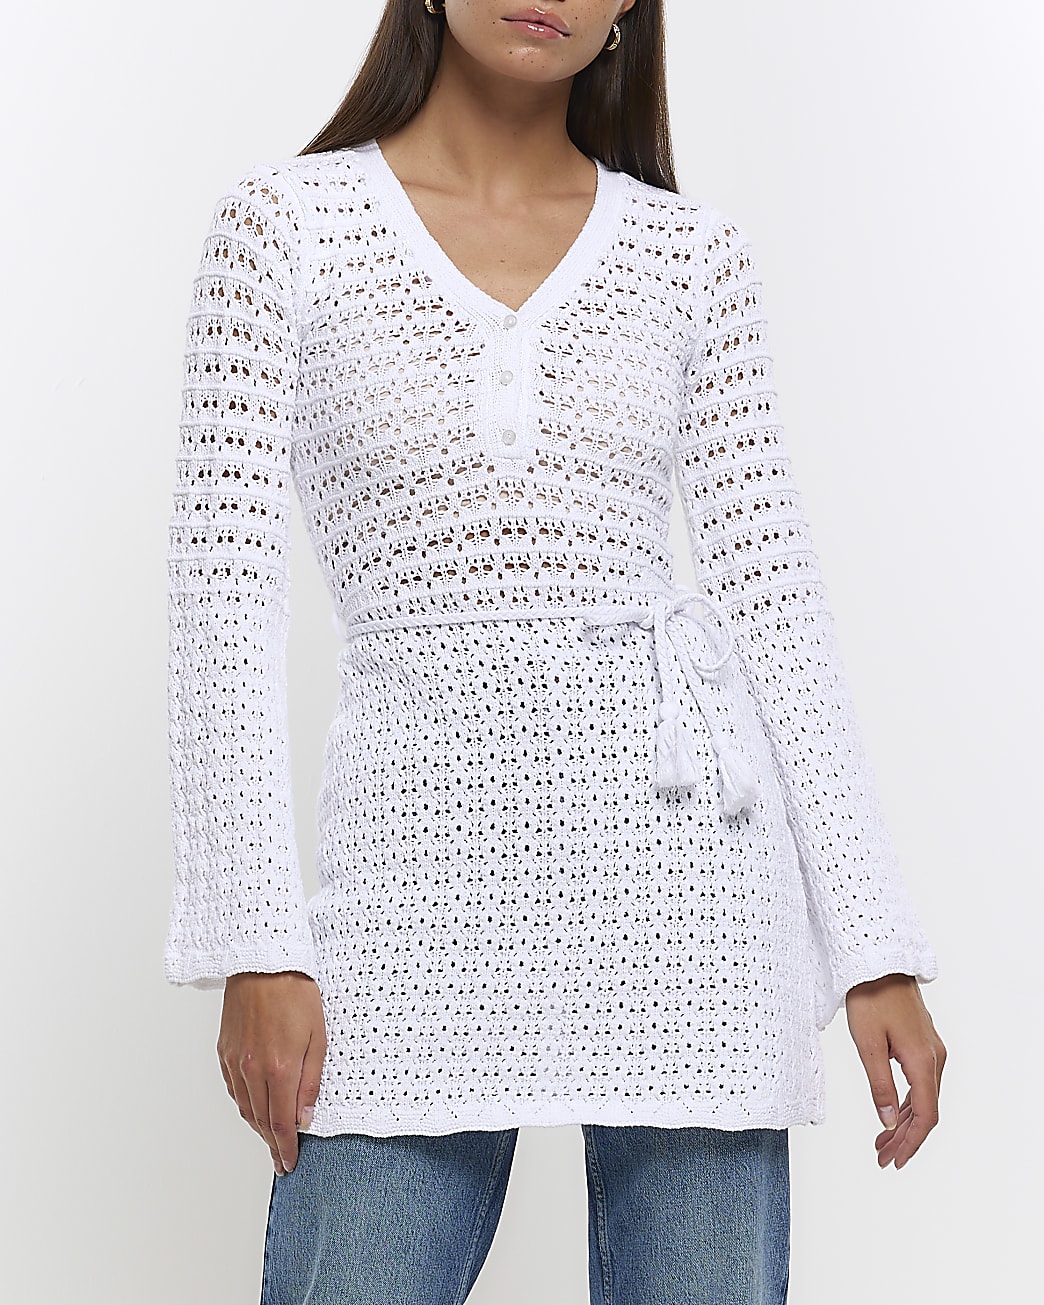 White crochet long sleeve top